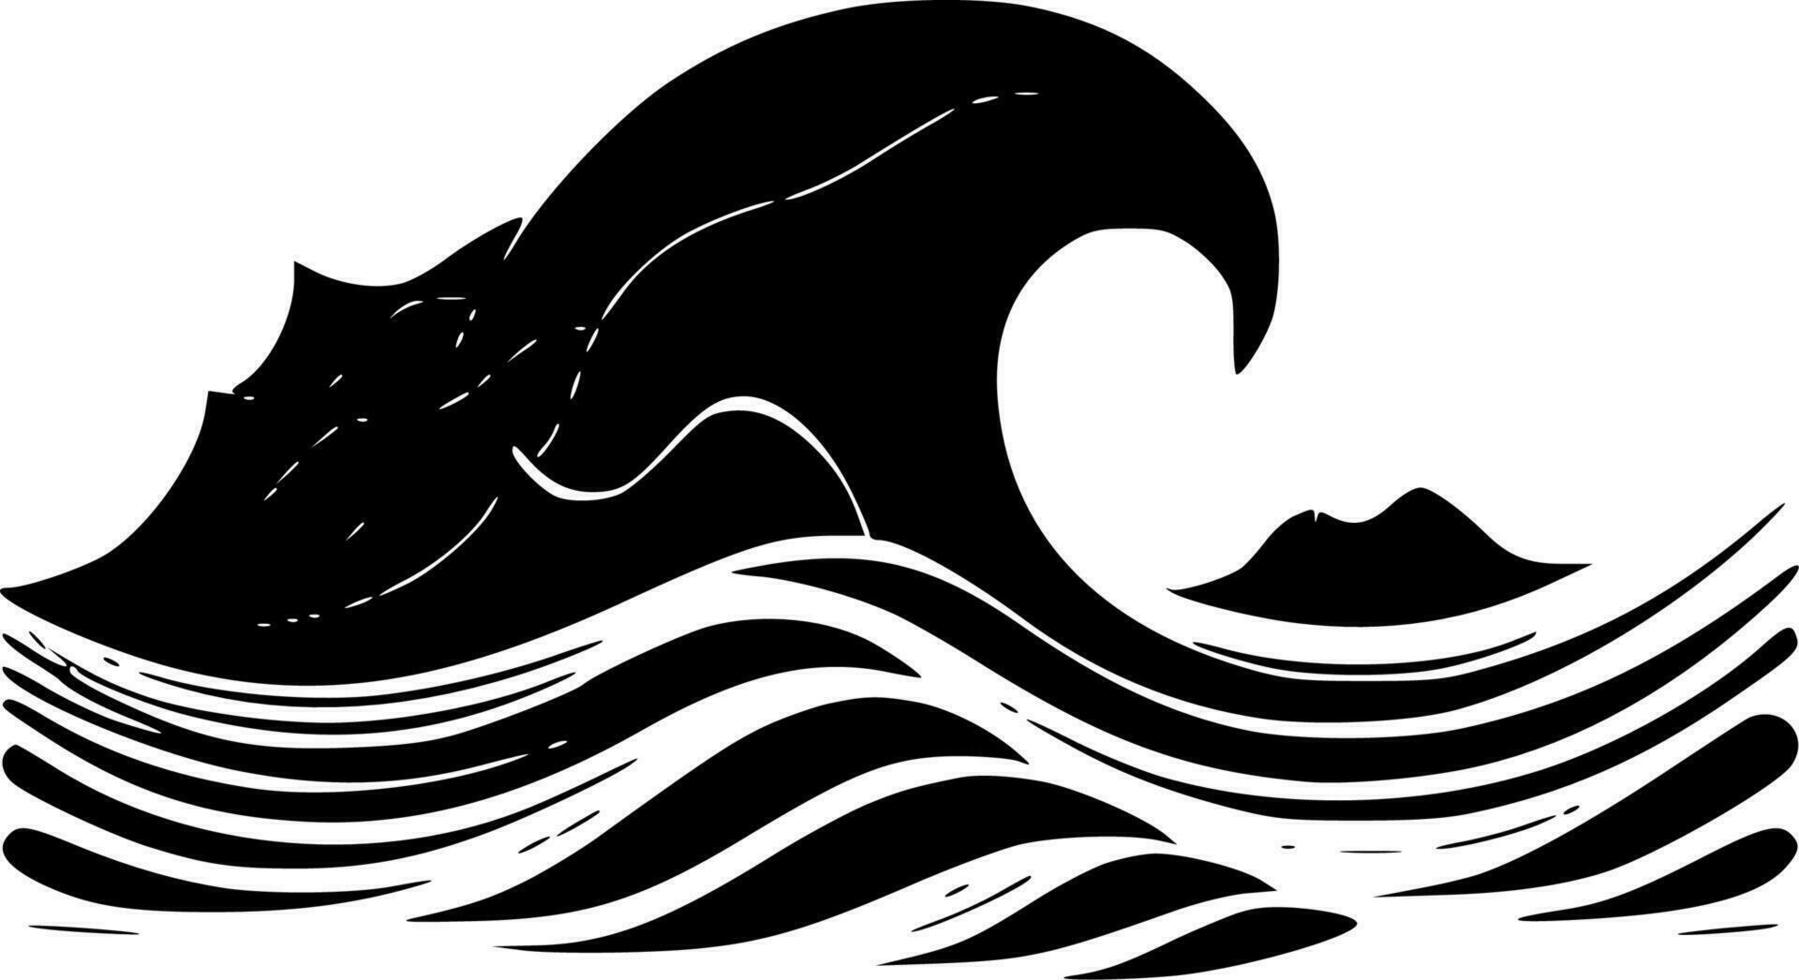 onde, minimalista e semplice silhouette - vettore illustrazione